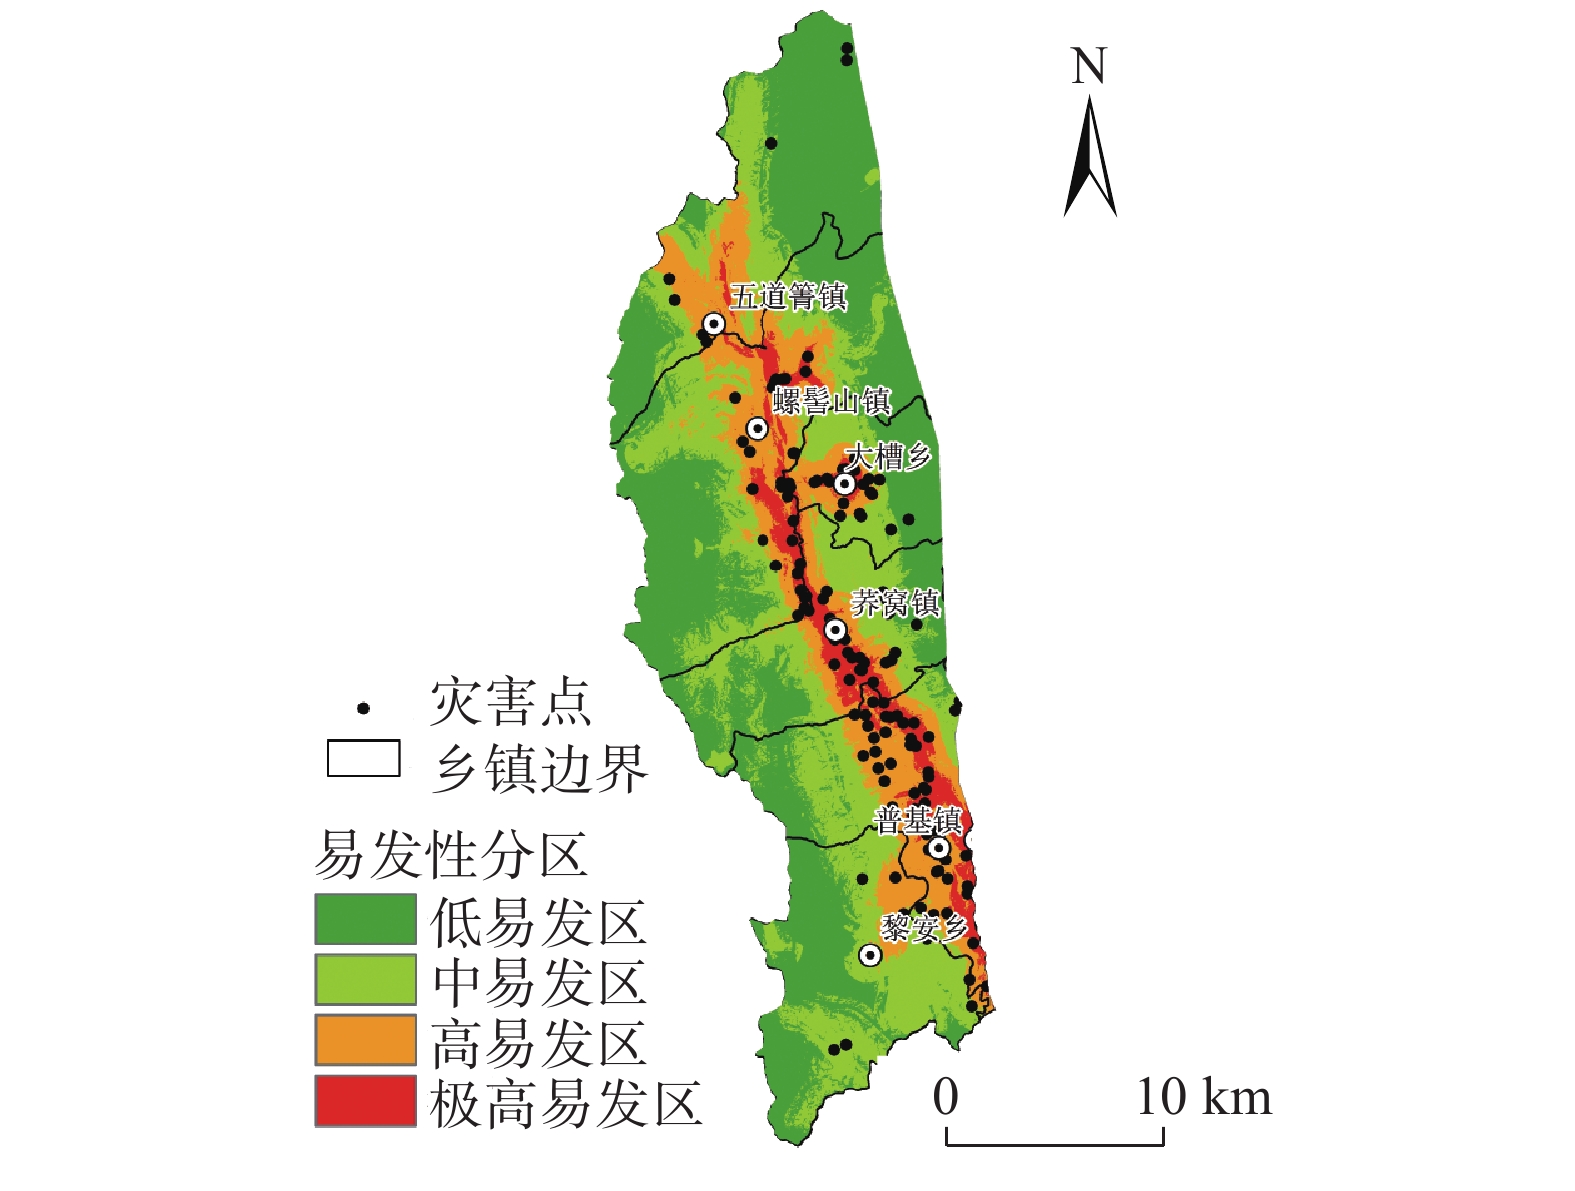 中国科大在安宁河断裂带上地壳精细结构、孕震构造和强震灾害评估研究中取得新进展